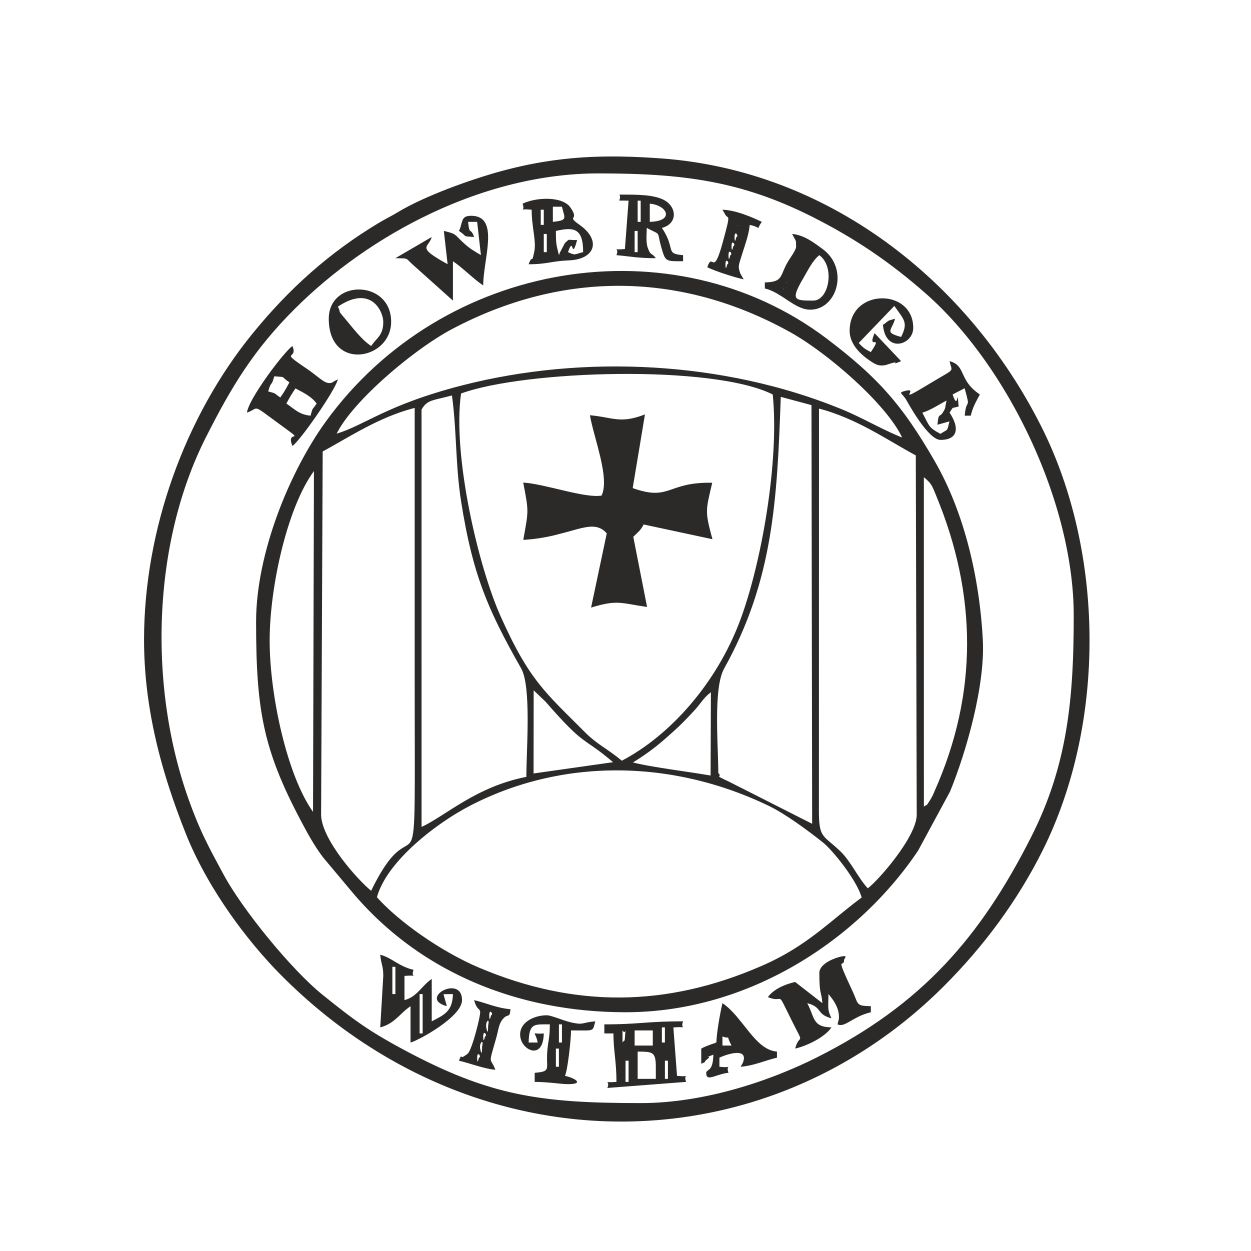 Howbridge logo.jpg